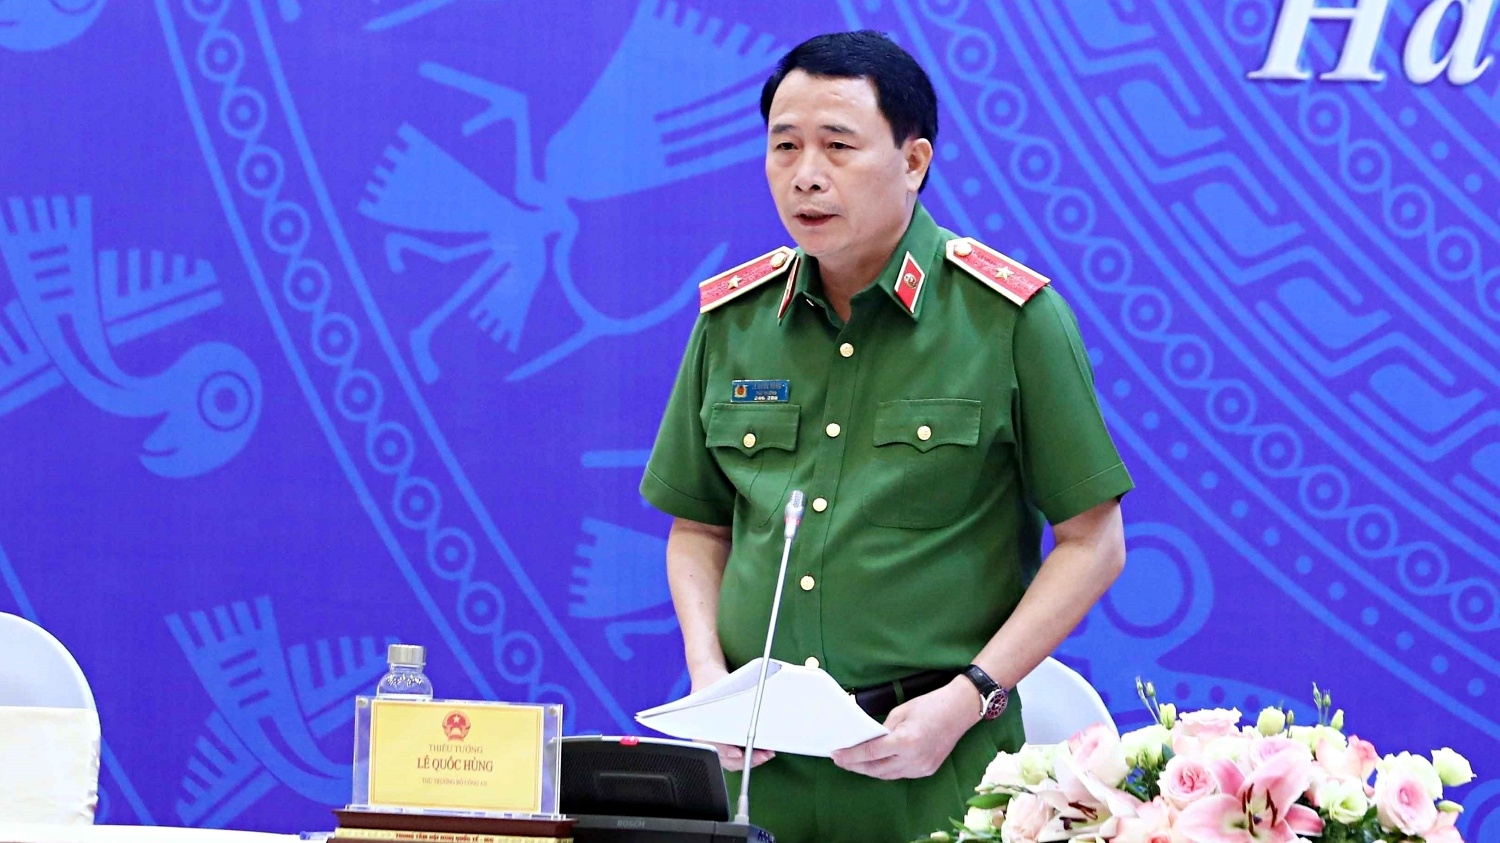 Ông Lê Quốc Hùng, Thứ trưởng Bộ Công an Ủy viên Thường trực Hội đồng Tư vấn đặc xá năm 2021 trả lời các câu hỏi tại họp báo